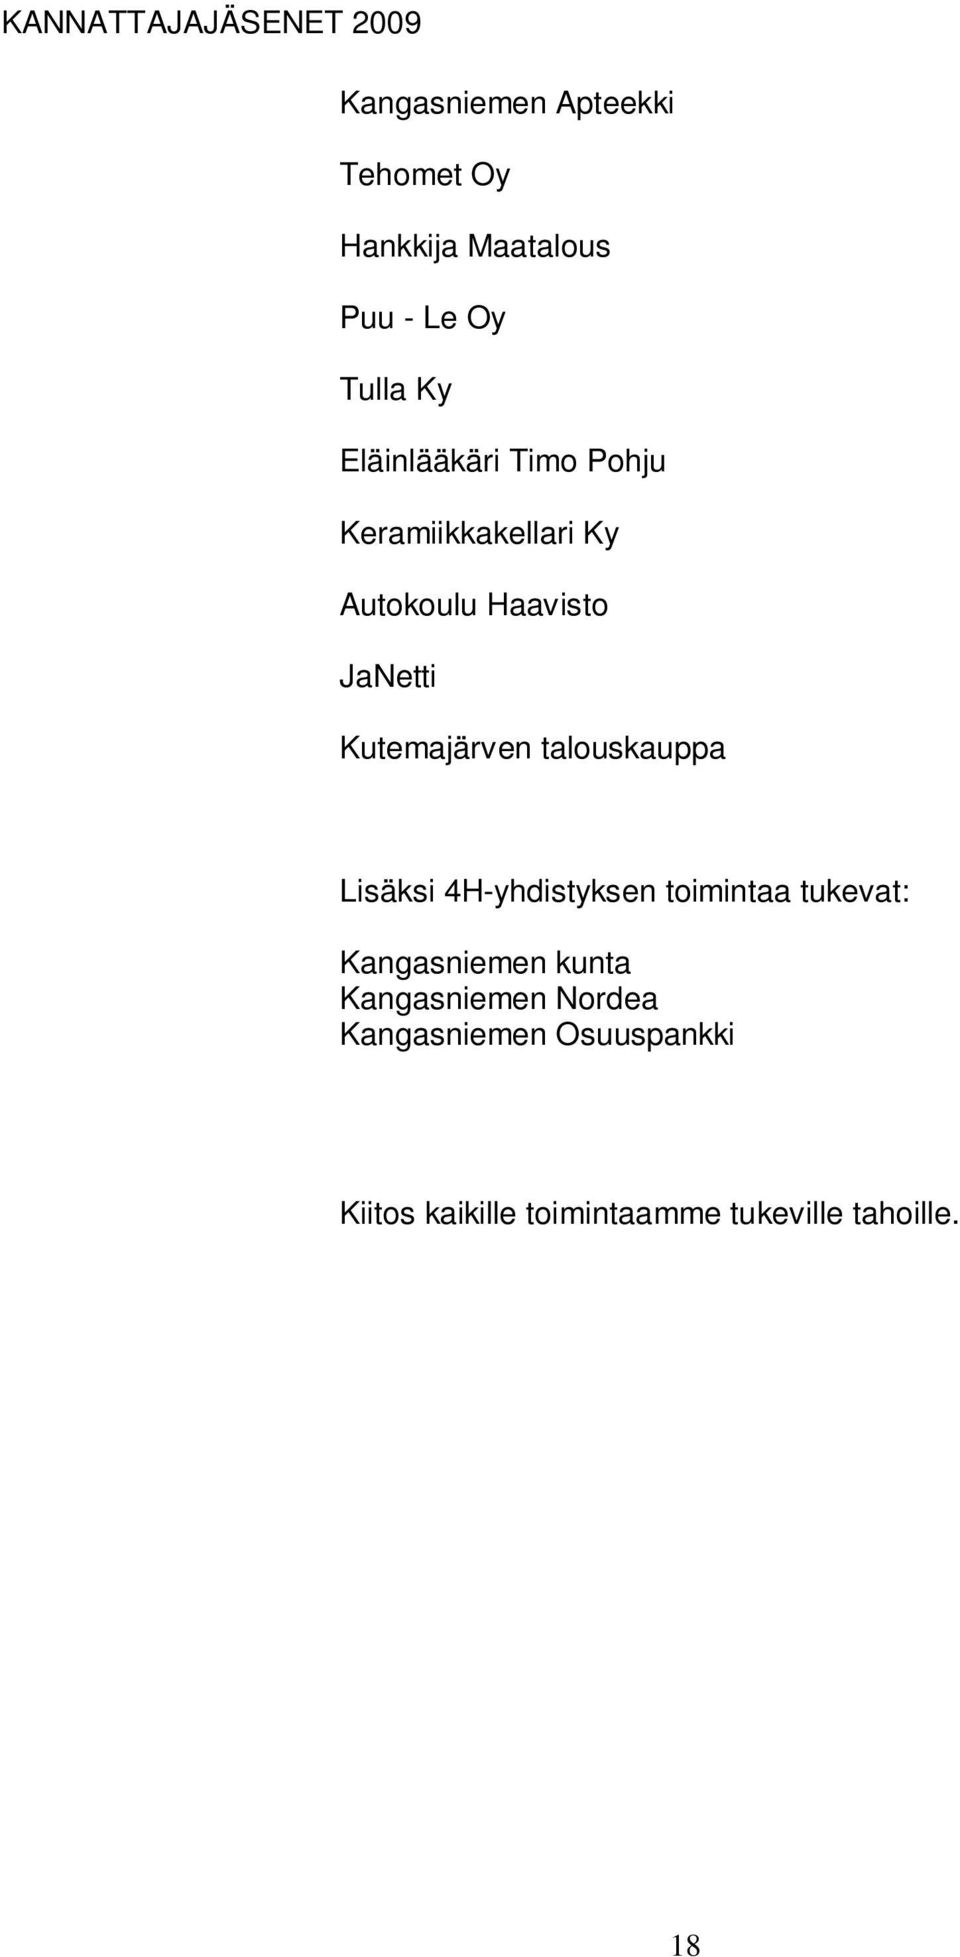 Kutemajärven talouskauppa Lisäksi 4H-yhdistyksen toimintaa tukevat: Kangasniemen kunta